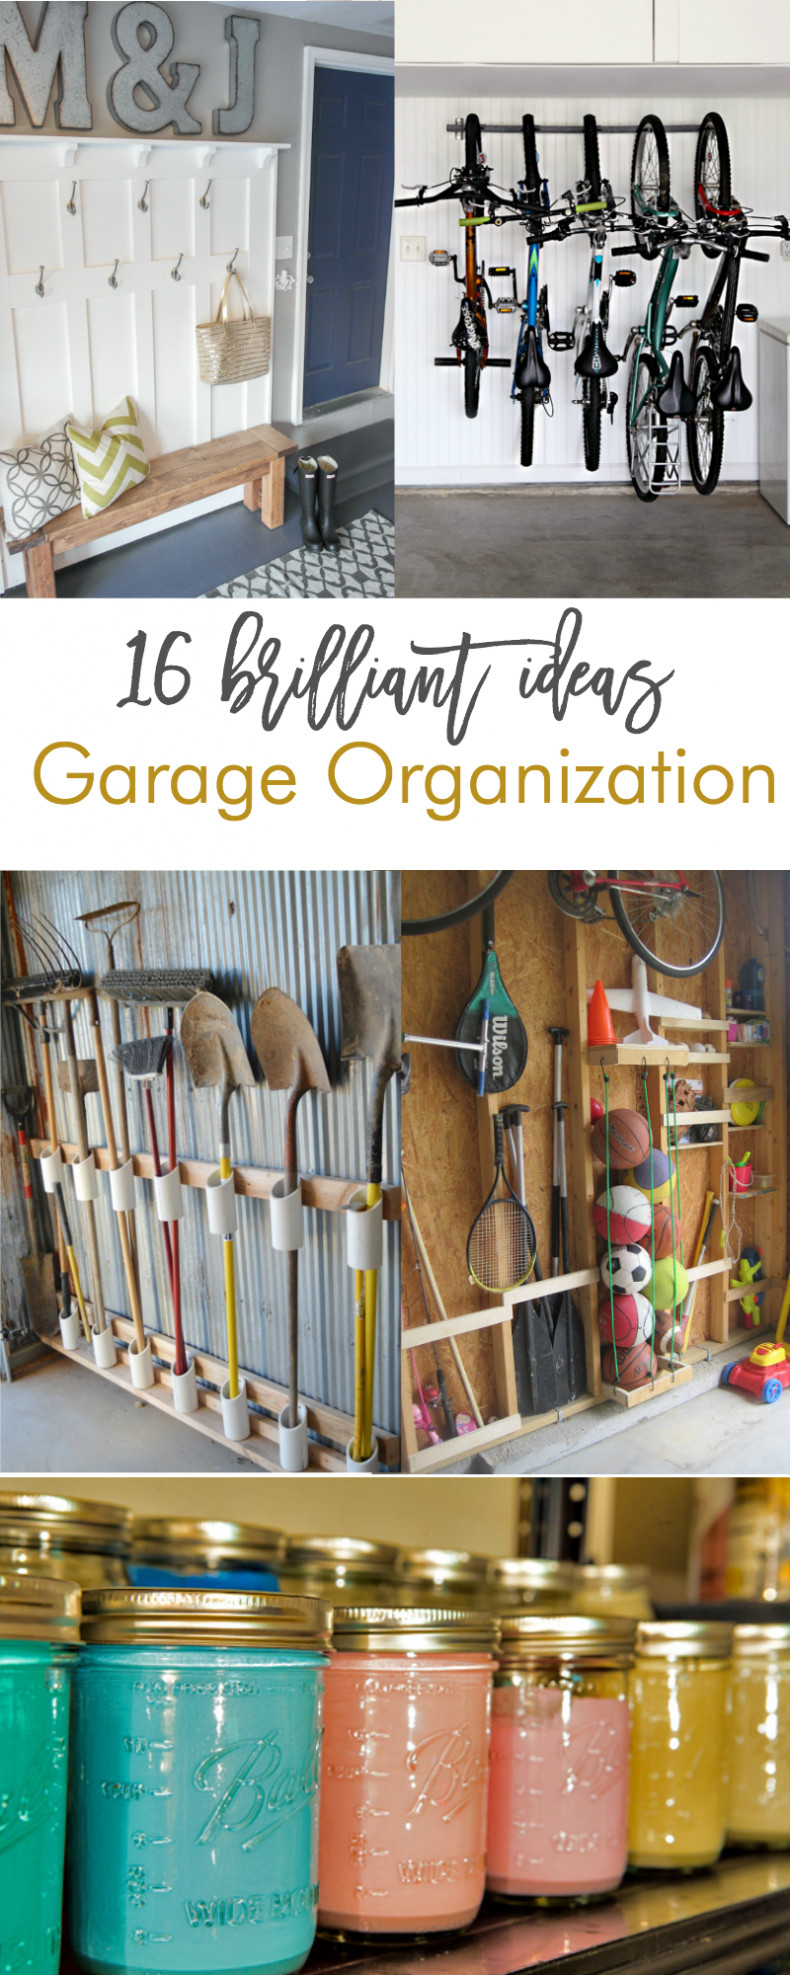 Organization Ideas DIY
 16 Brilliant DIY Garage Organization Ideas